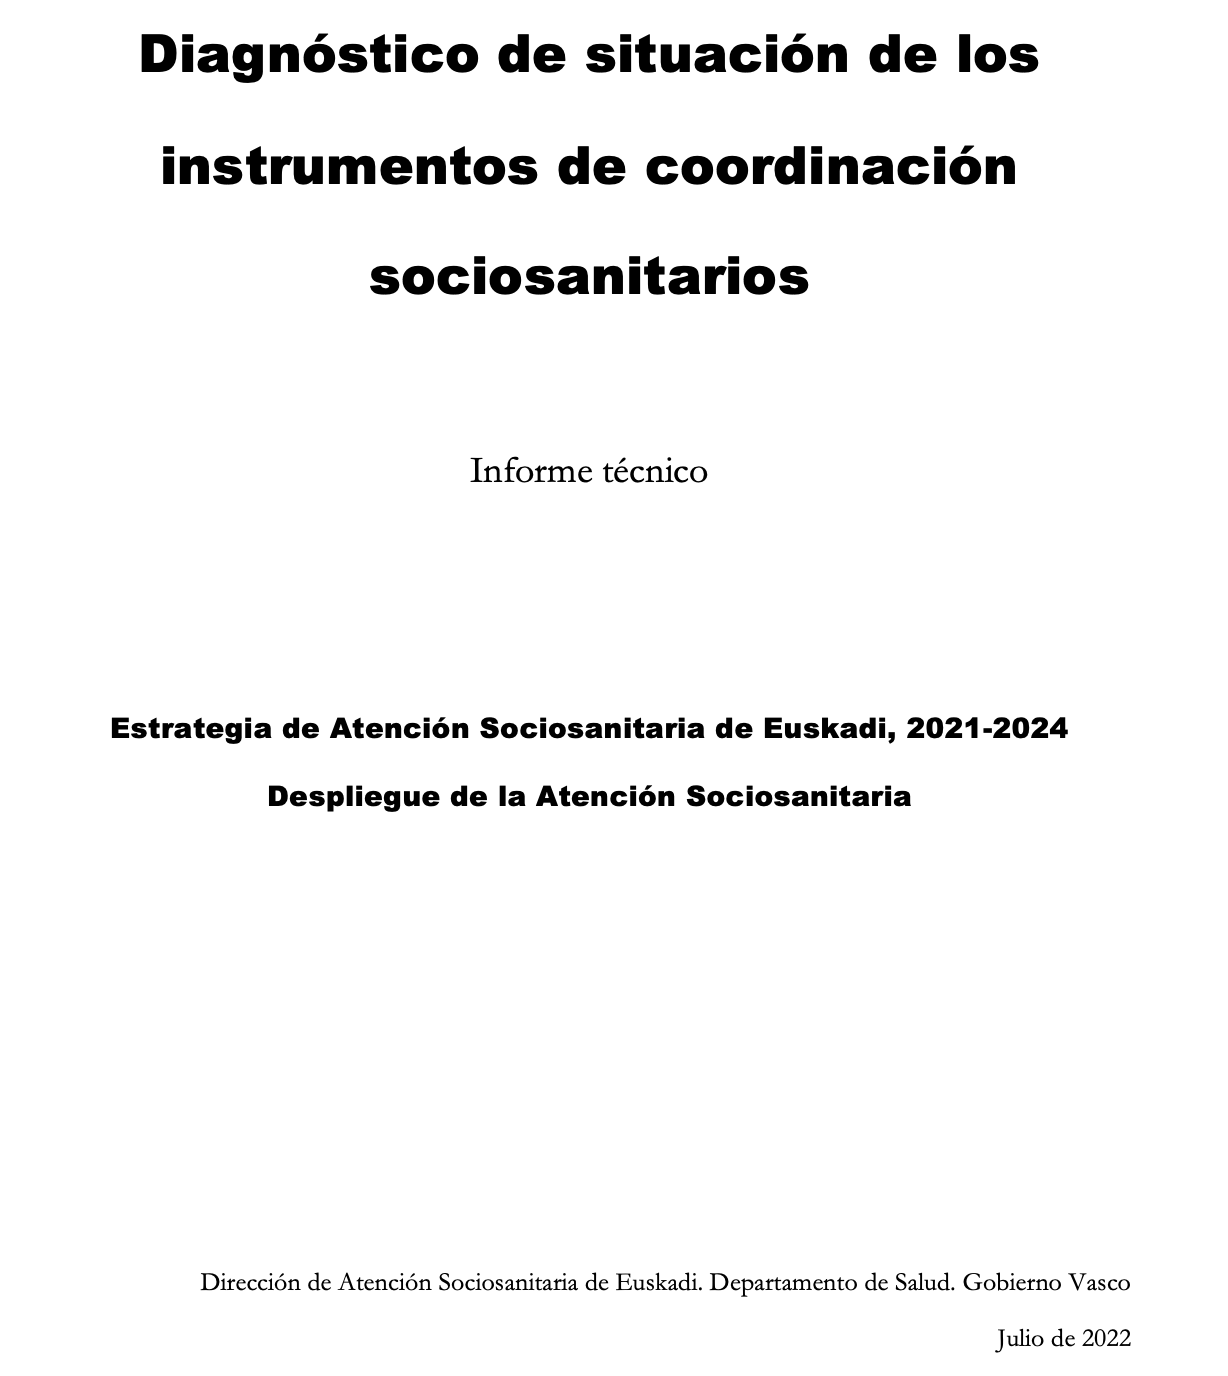 Diagnóstico de situación de los instrumentos de coordinación sociosanitarios. Informe técnico (2022)